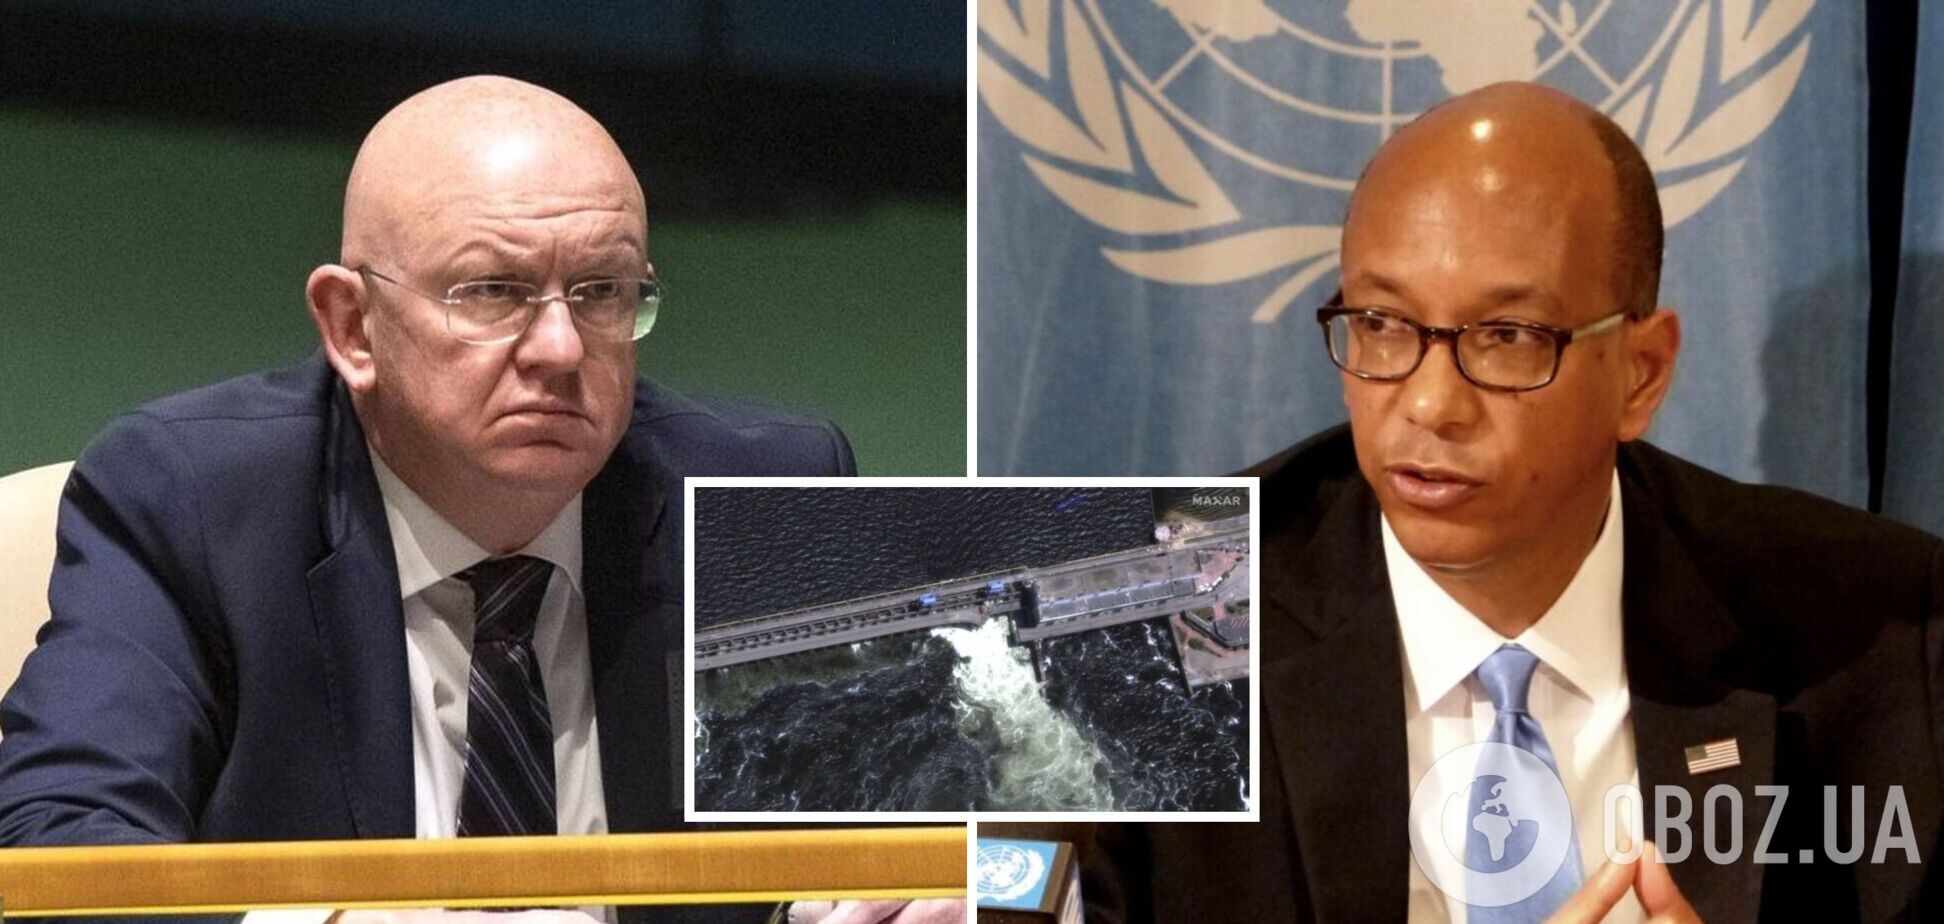 Международное сообщество в очередной раз поймало Россию на лжи: посол США в ООН напомнил Небензе об обязательстве не атаковать дамбы. Видео